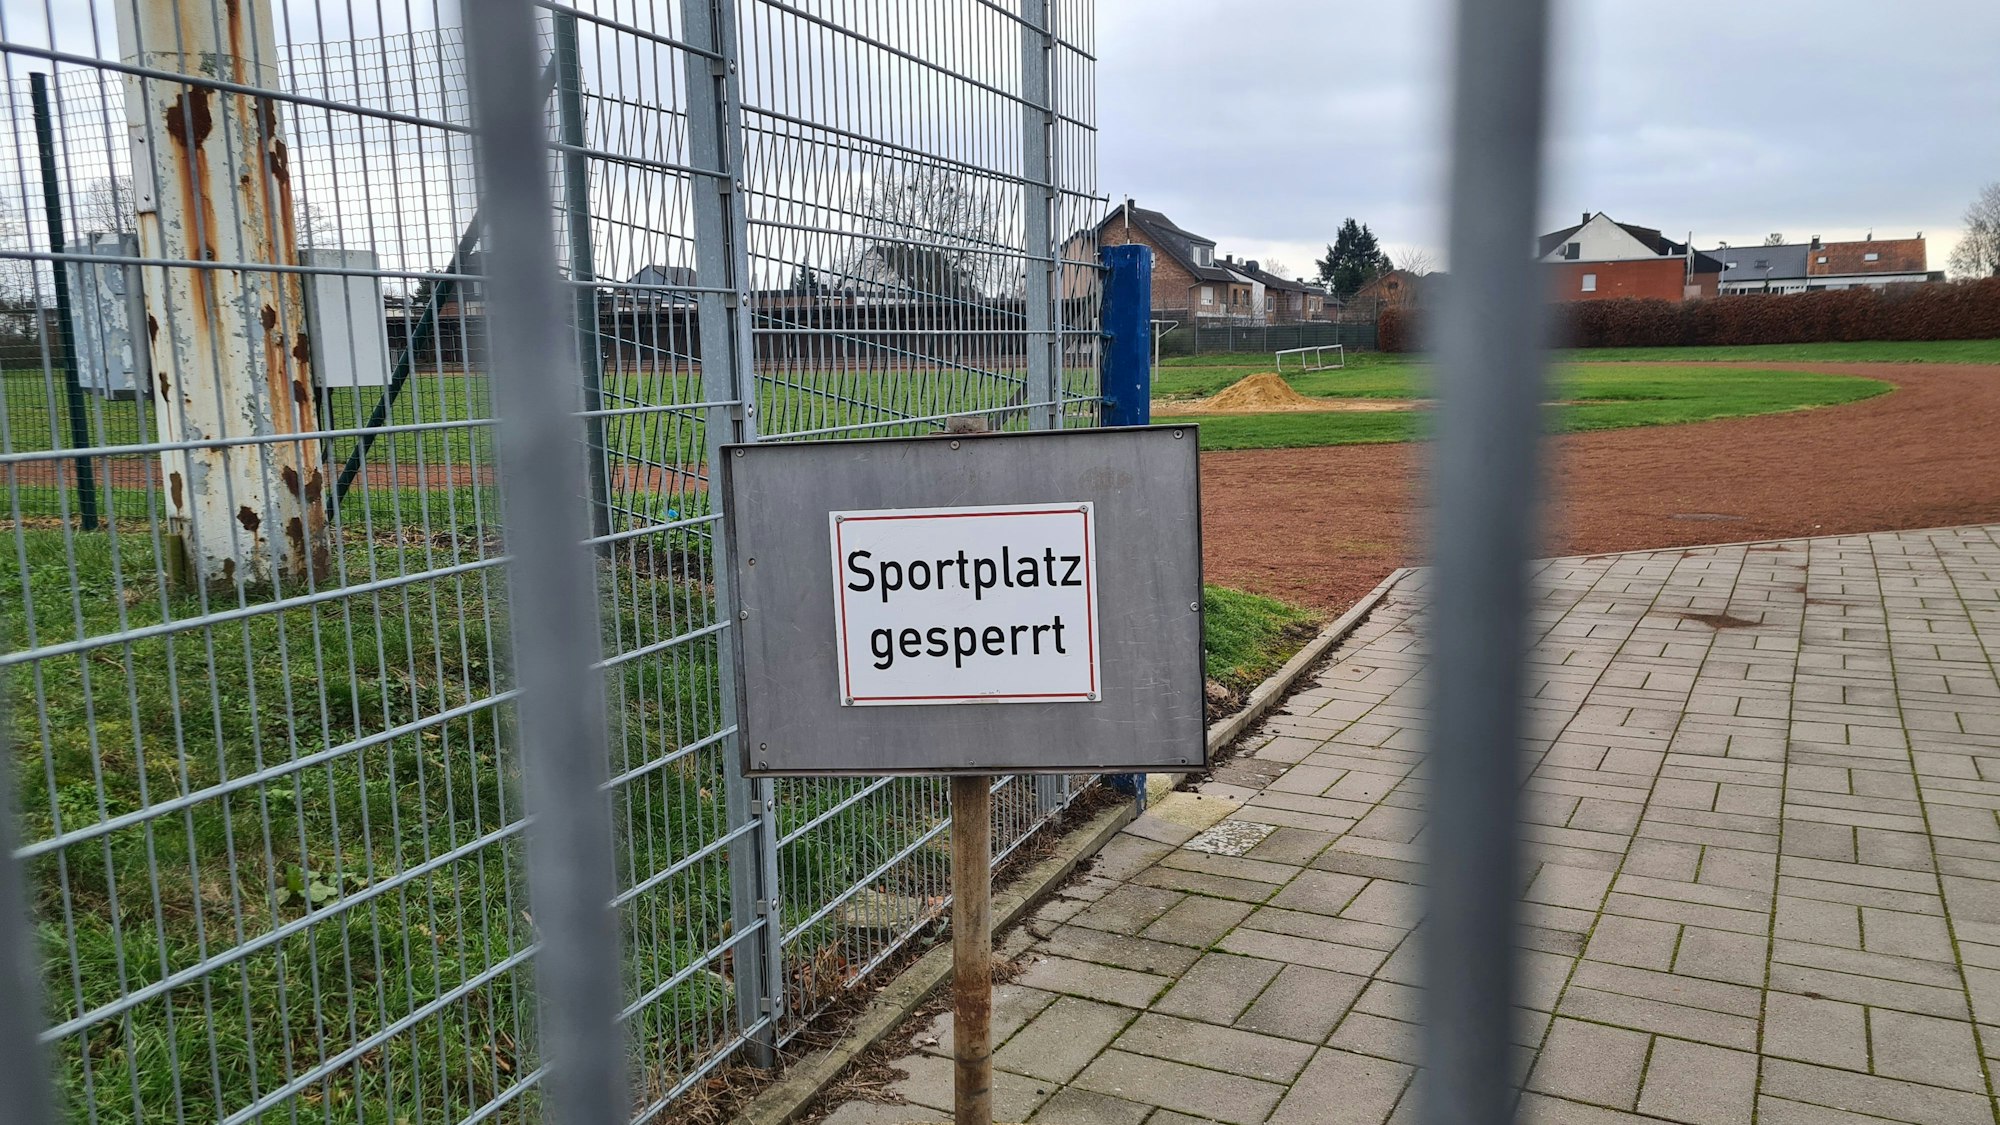 Auf dem Foto ist der Rasenplatz des Jahnstadions in Bergheim zu sehen. Auf einem Schild ist zu lesen "Sportplatz gesperrt".